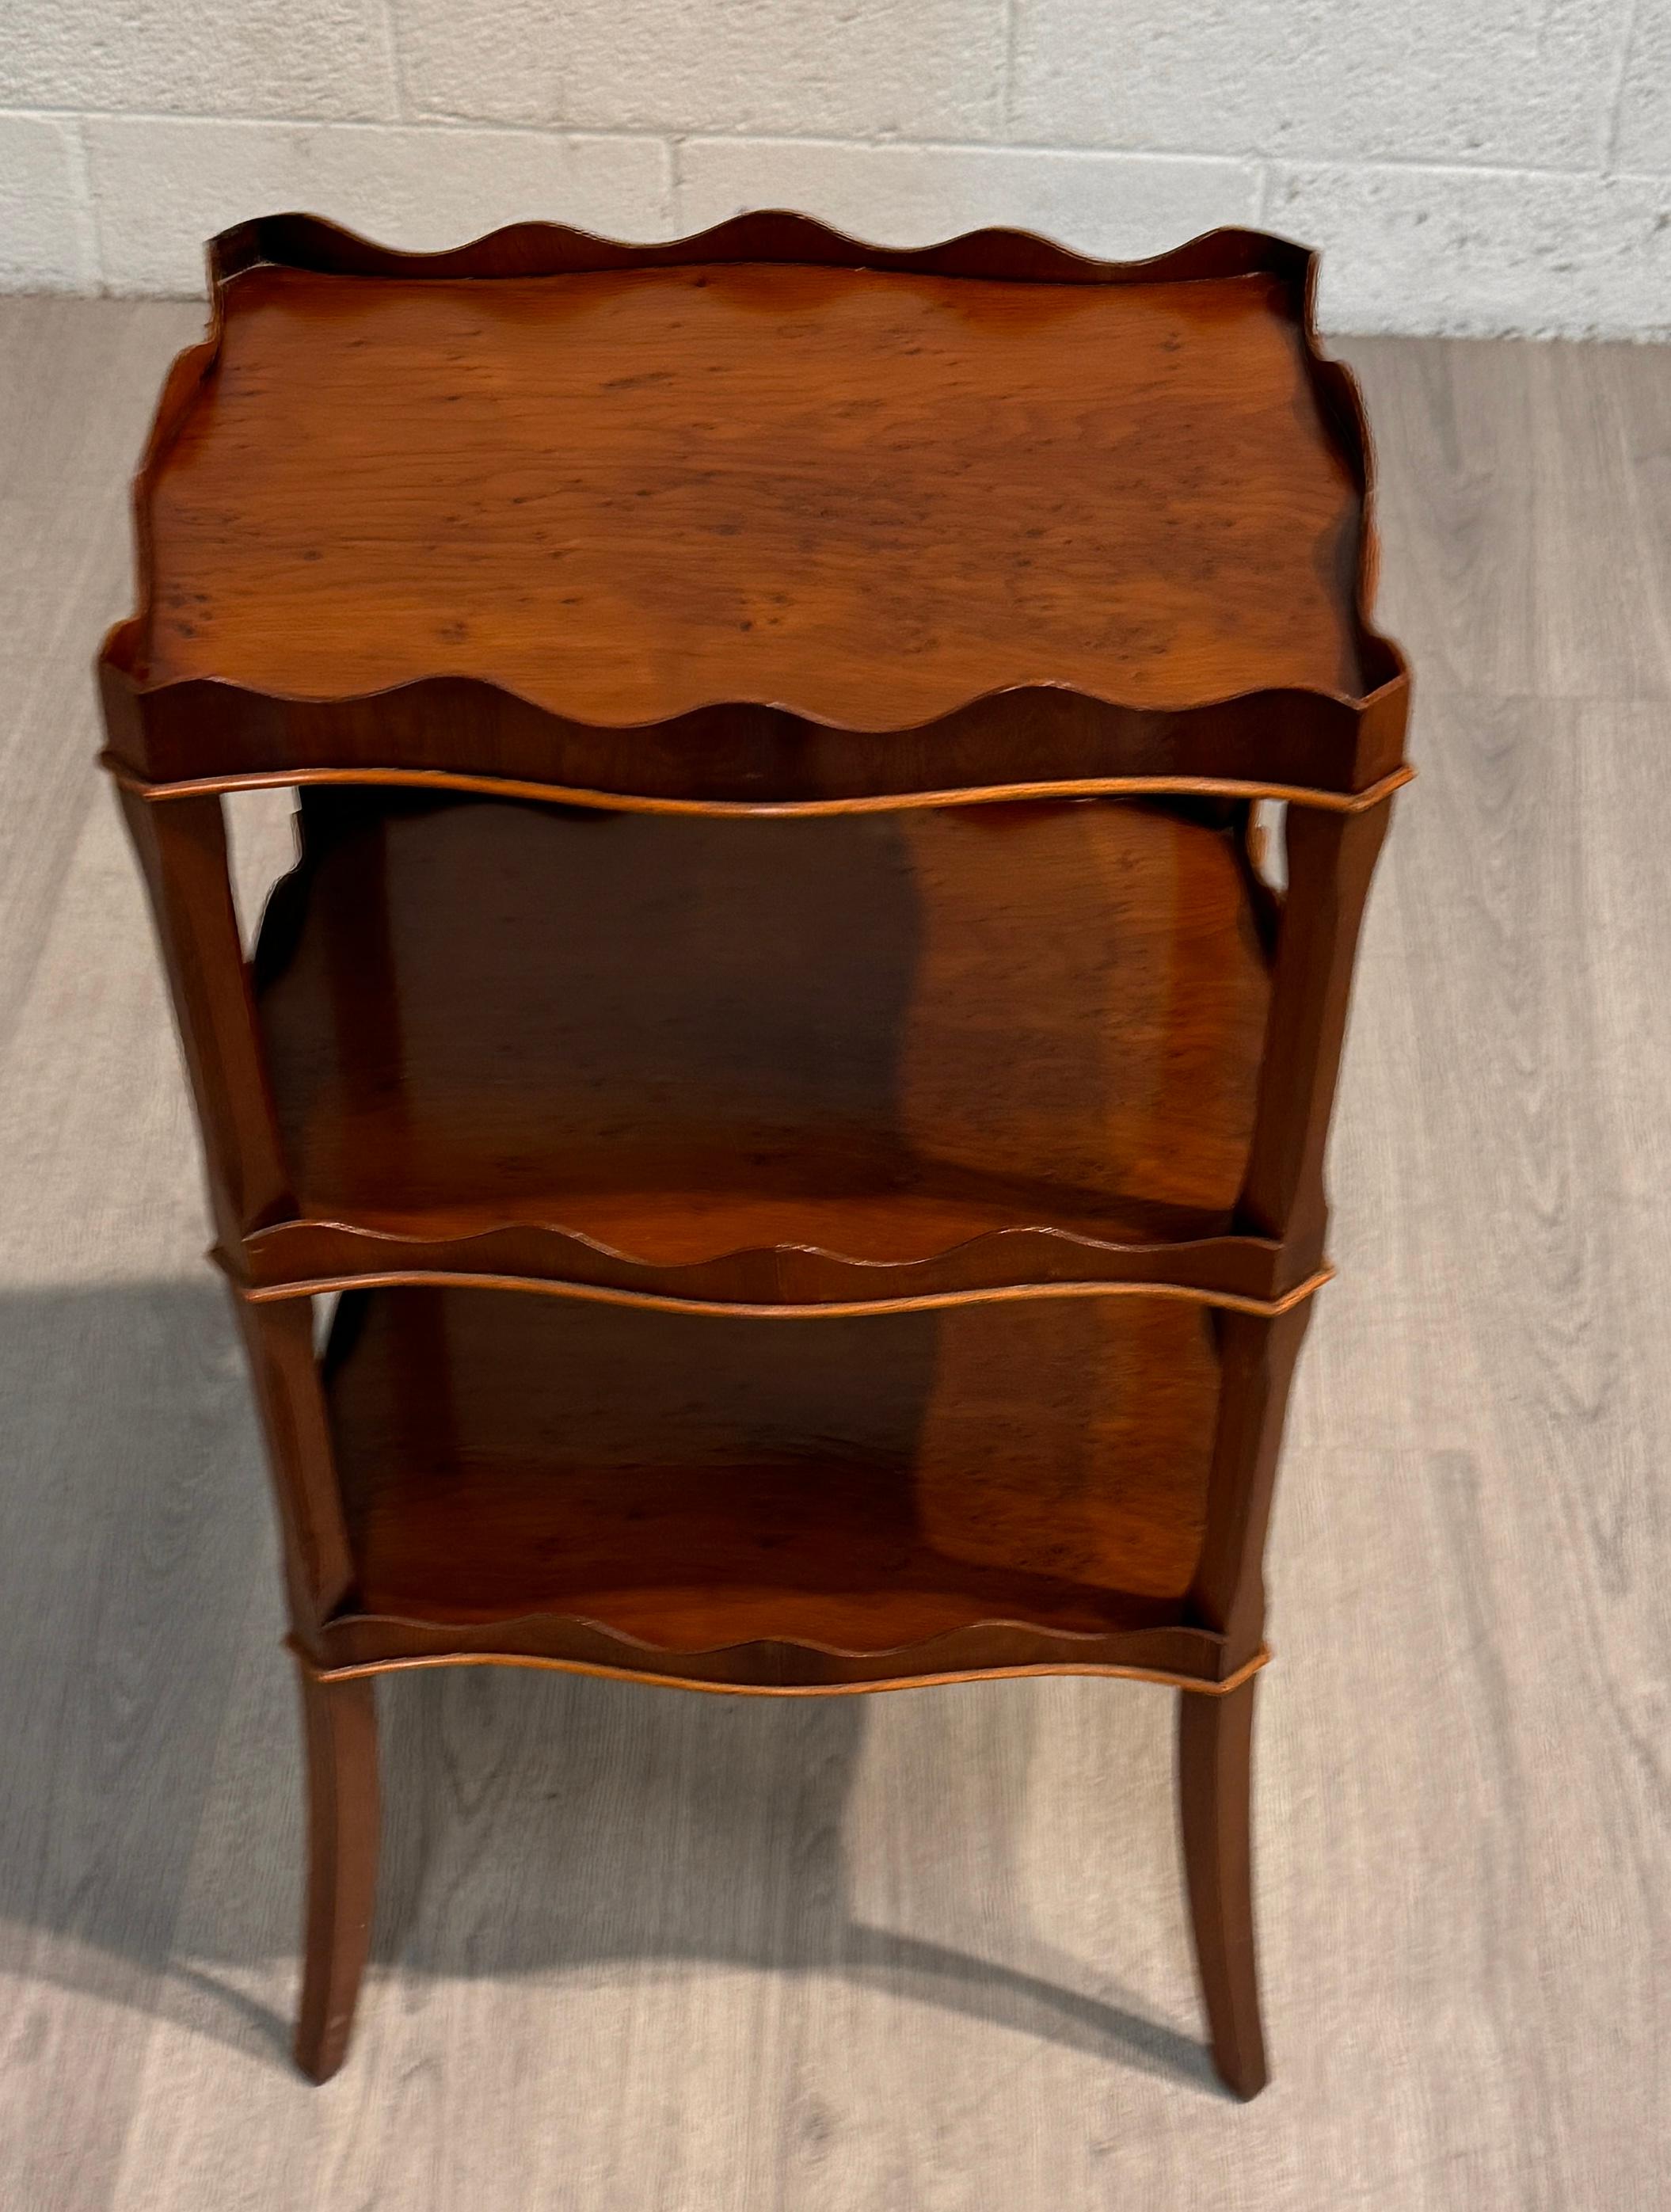 Lassen Sie sich von der raffinierten Eleganz einer vergangenen Ära inspirieren - mit unserem Drinks Table aus englischem Eibenholz, einem geschichtsträchtigen Meisterwerk im Sheraton-Stil. Dieser aus feinstem englischen Eibenholz gefertigte Tisch